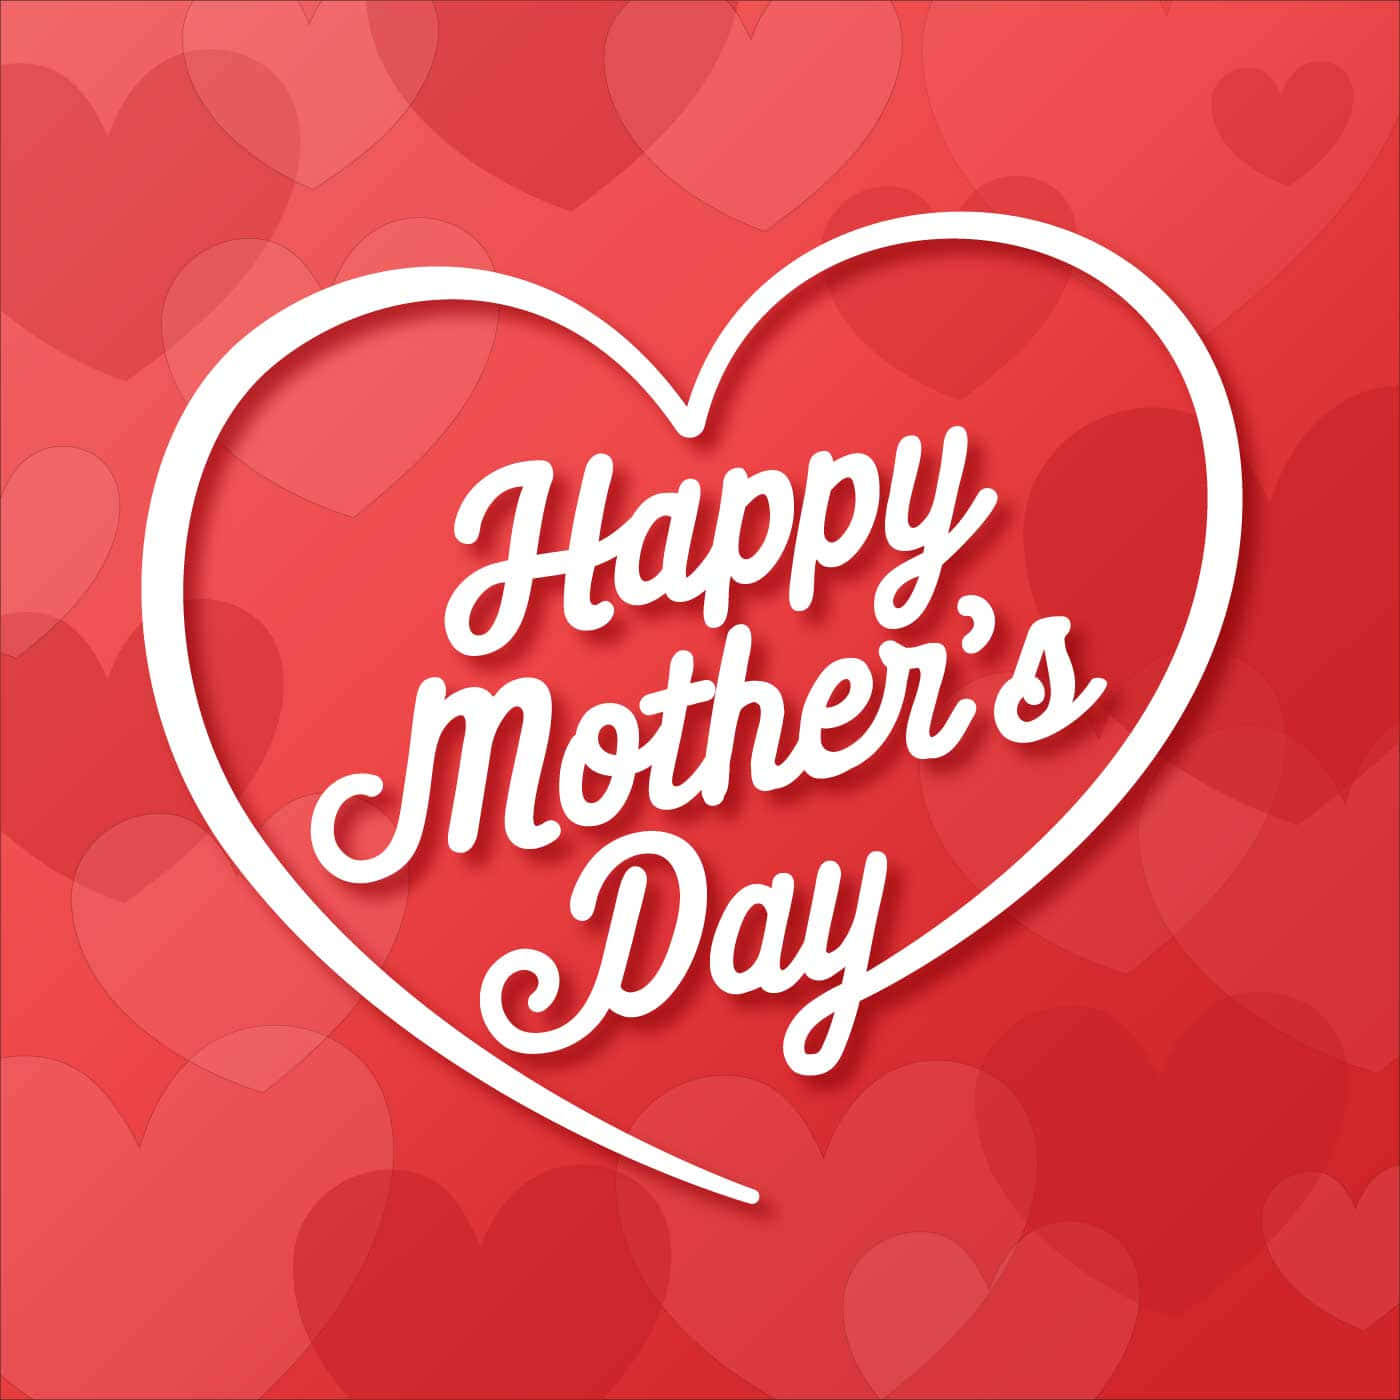 Felizdia Das Mães A Todas As Mães Amorosas Por Aí!